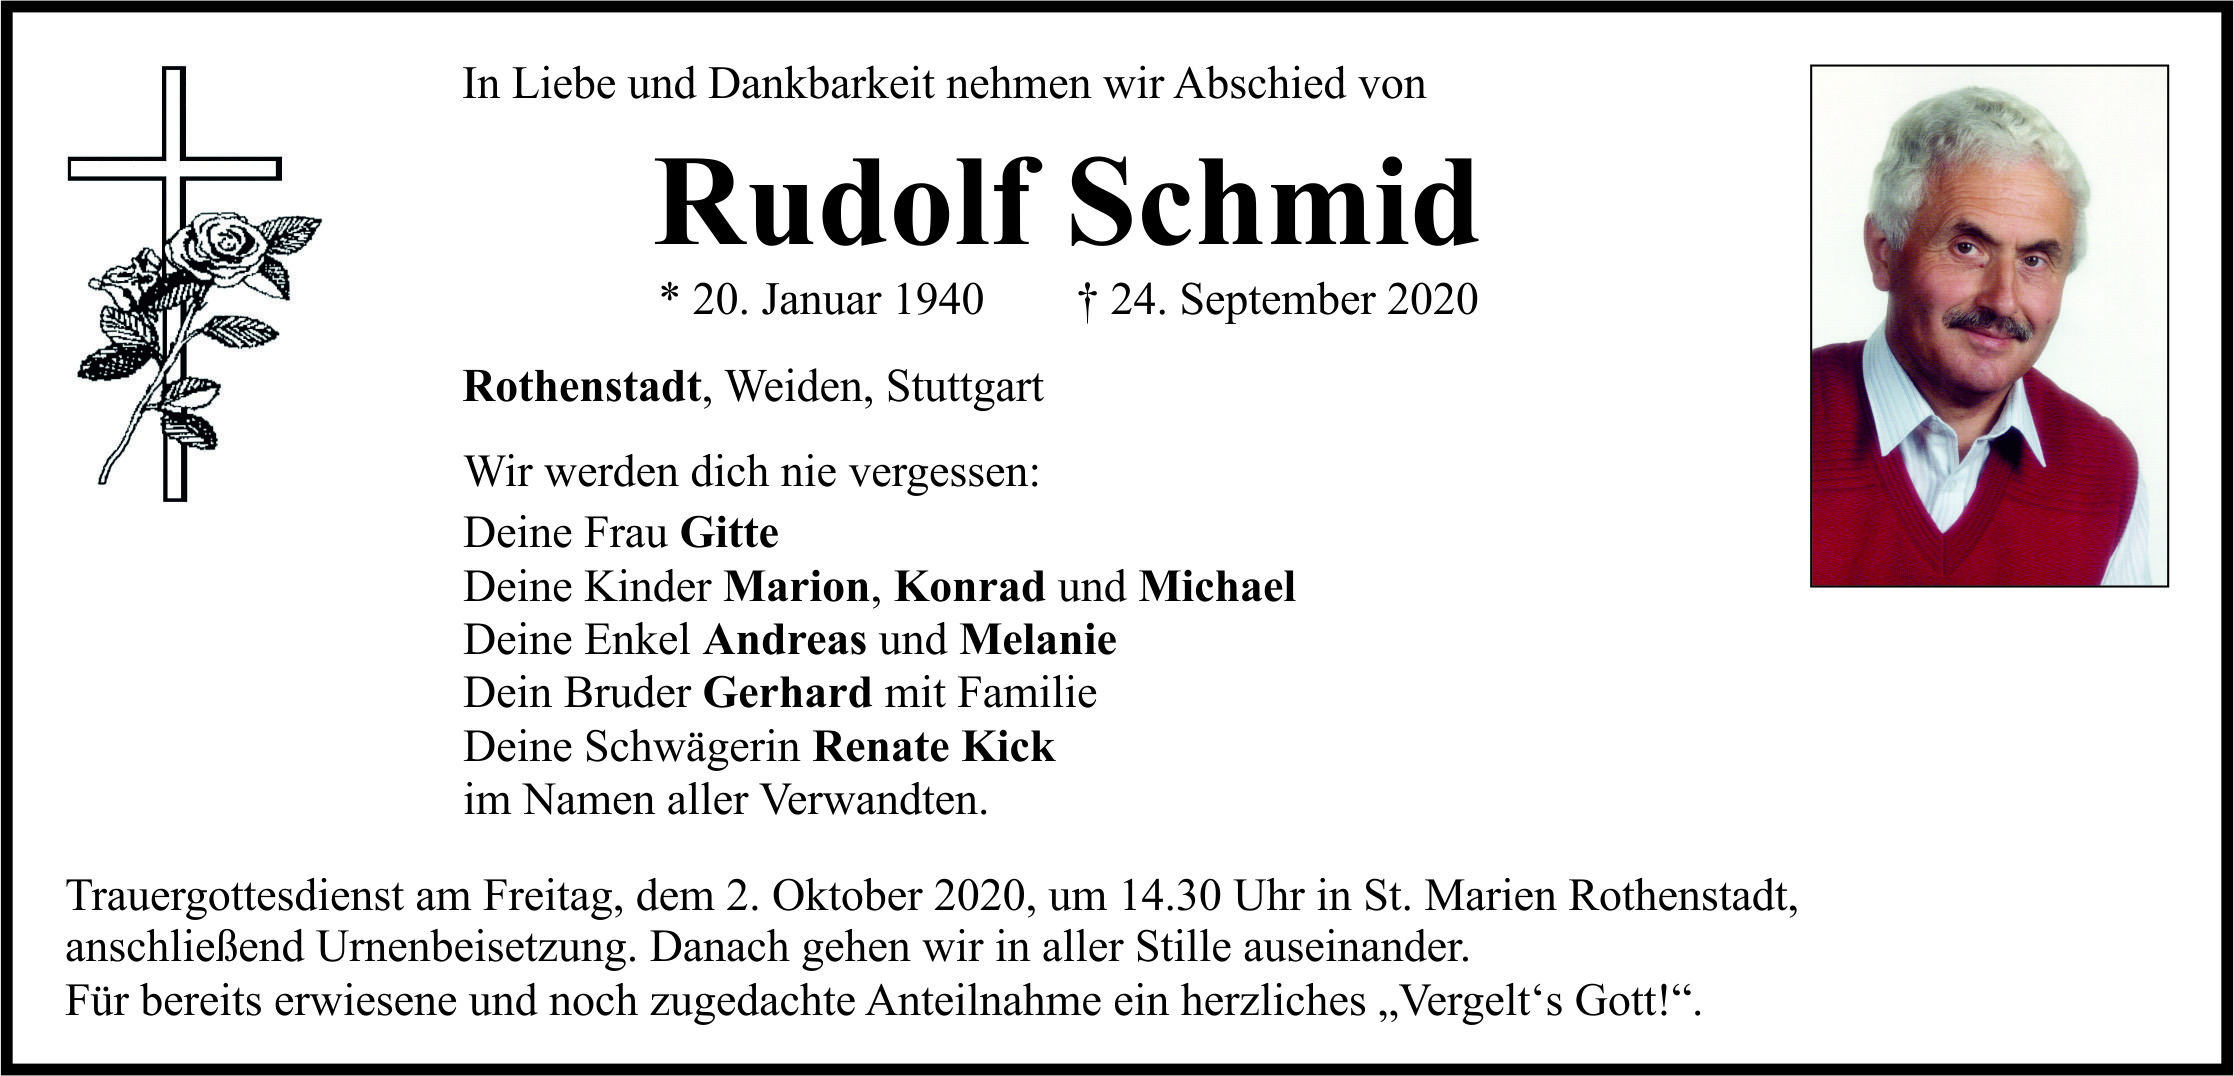 Traueranzeige Rudolf Schmid, Rothenstadt